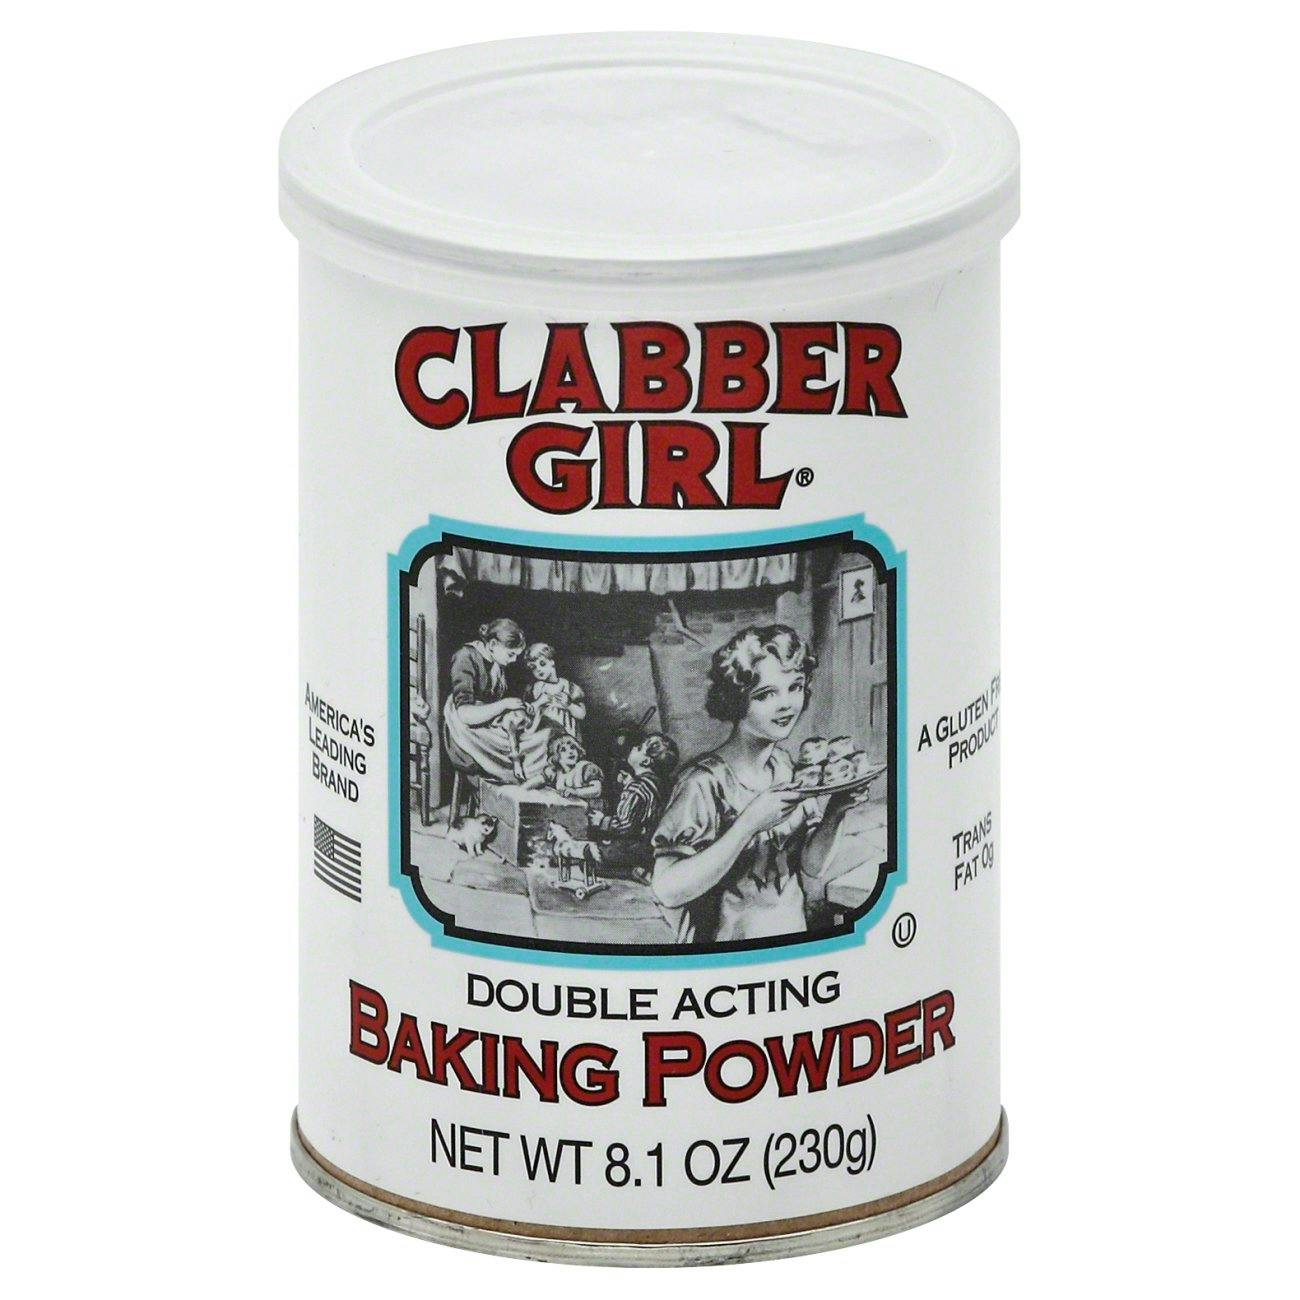 baking powder